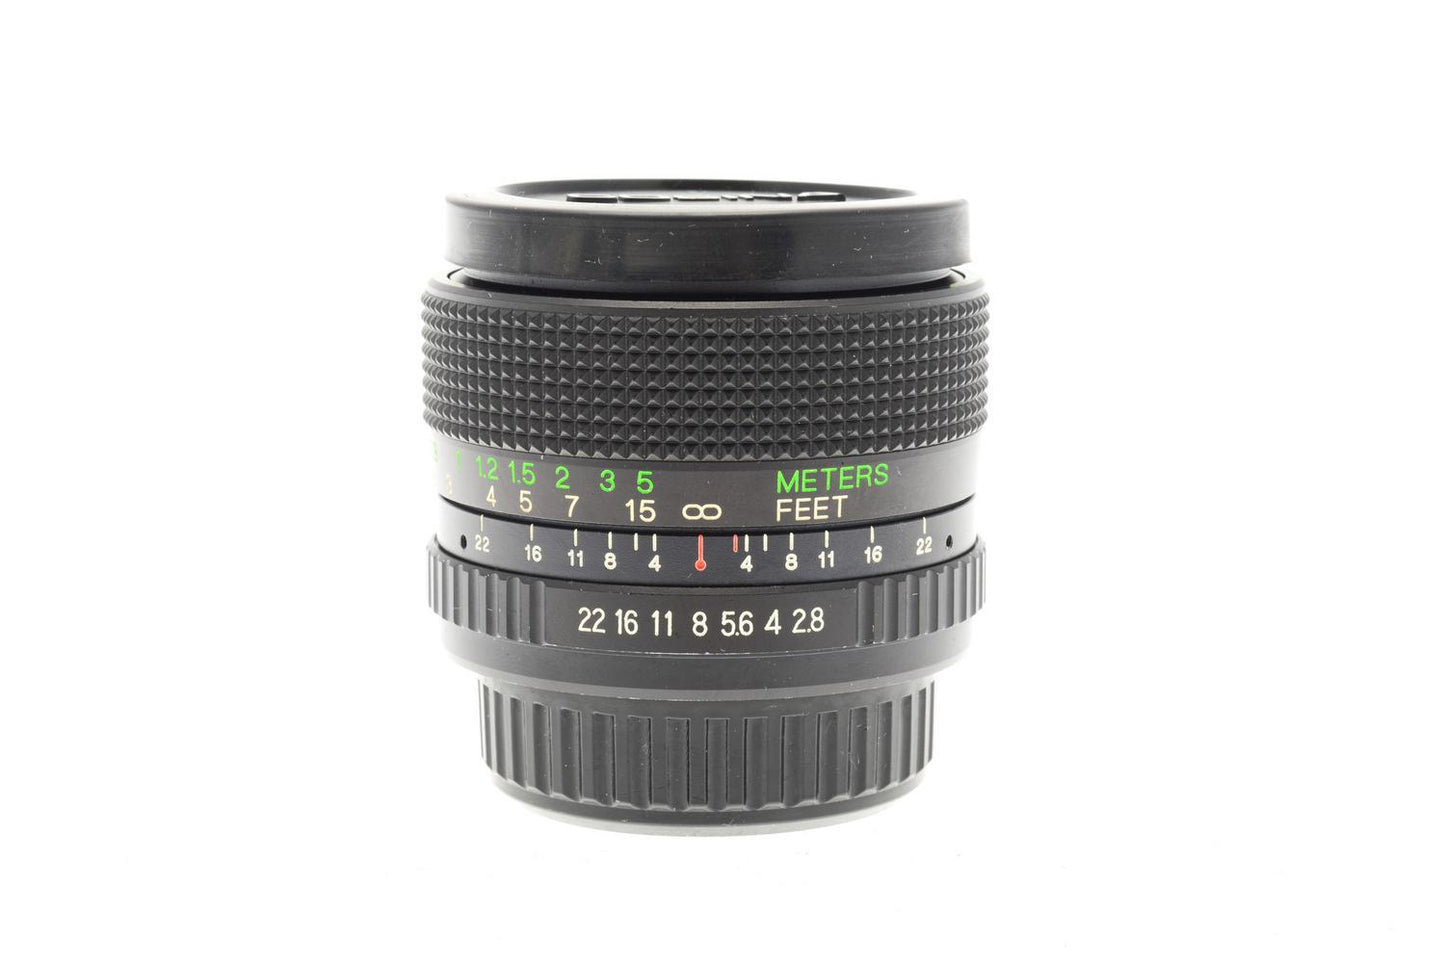 Cosina 28mm f2.8 Cosinon Auto MC - Lens